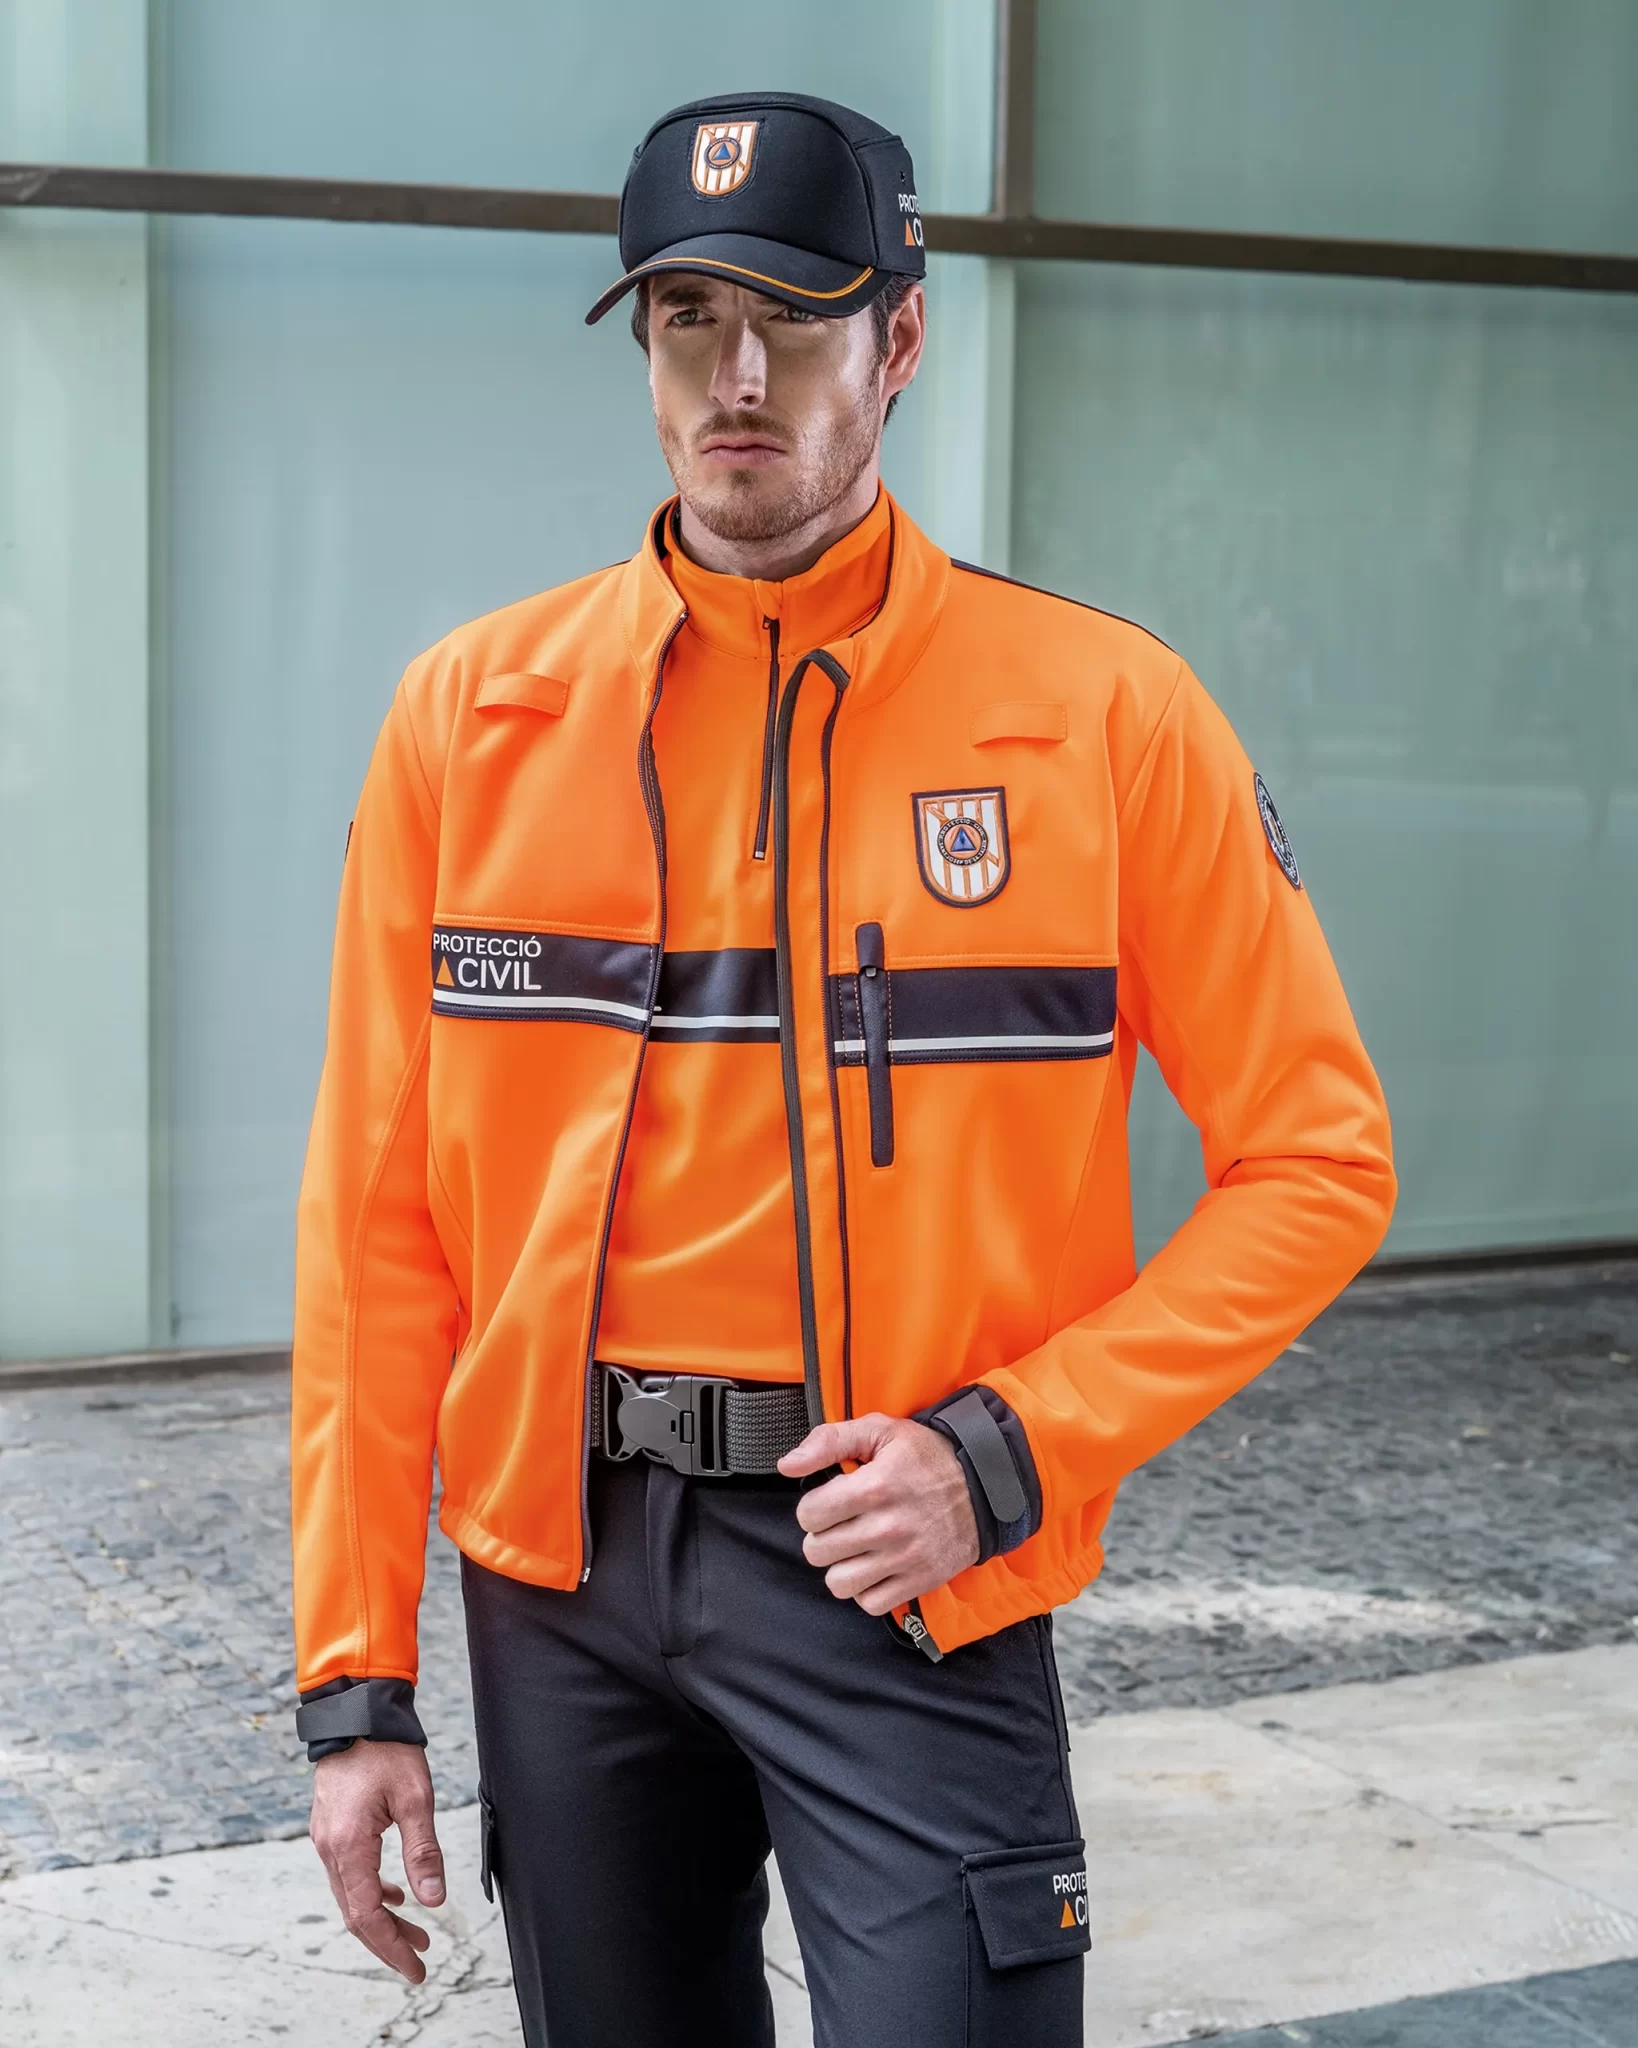 uniformes Protección Civil jersey térmico y chaqueta bearshell